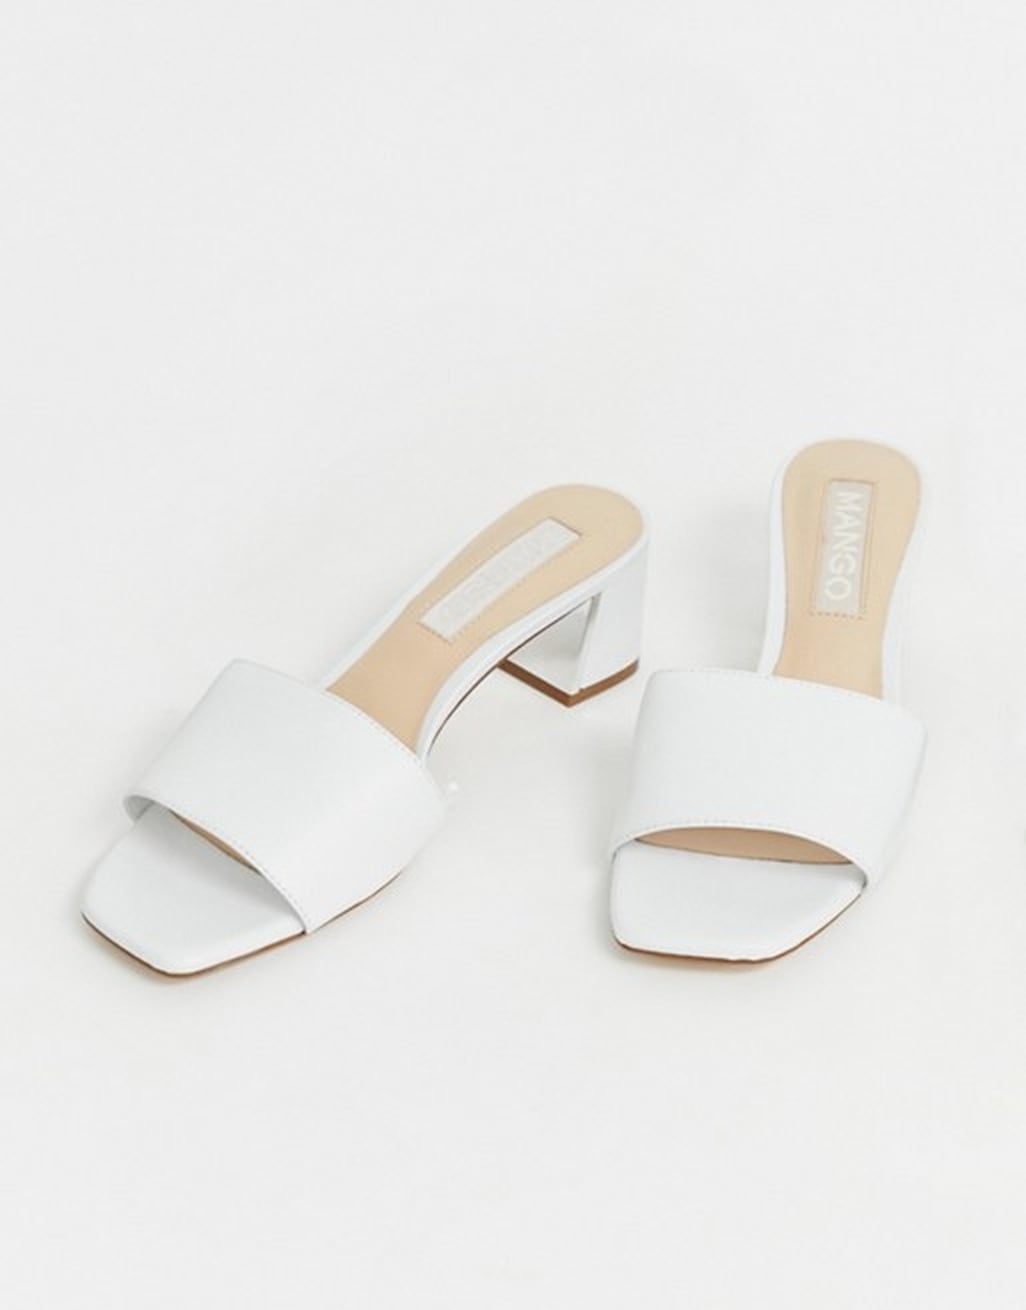 Emily Ratajkowski's White Steve Madden Sandals 2019 | POPSUGAR Fashion